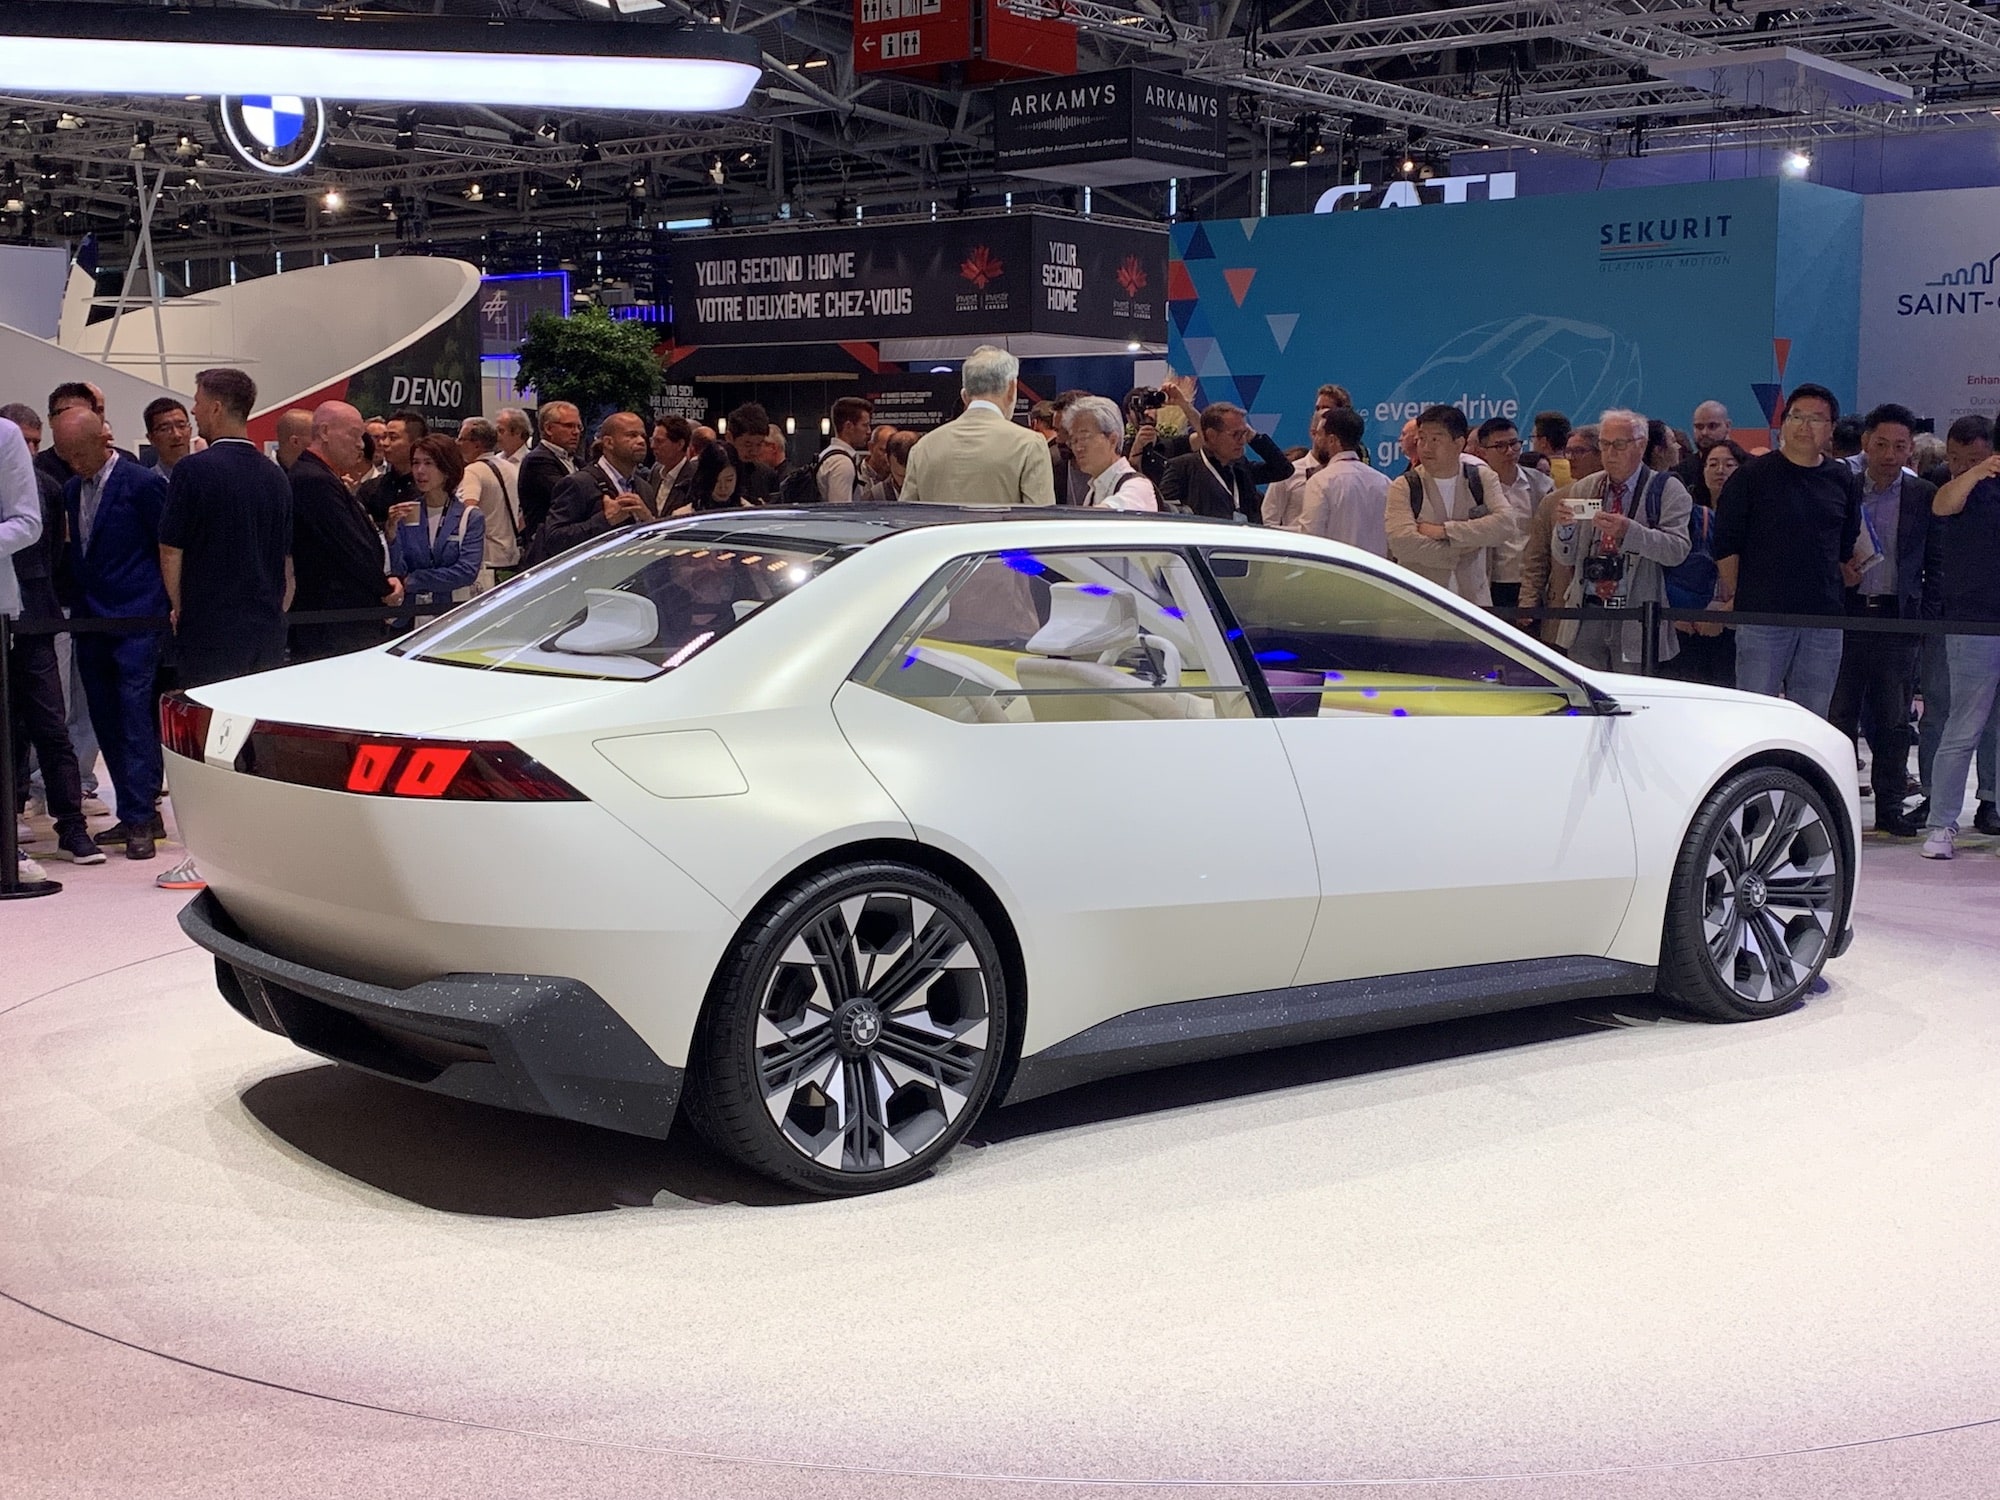 Batteries solides : mauvaise nouvelle pour les futures voitures électriques de BMW